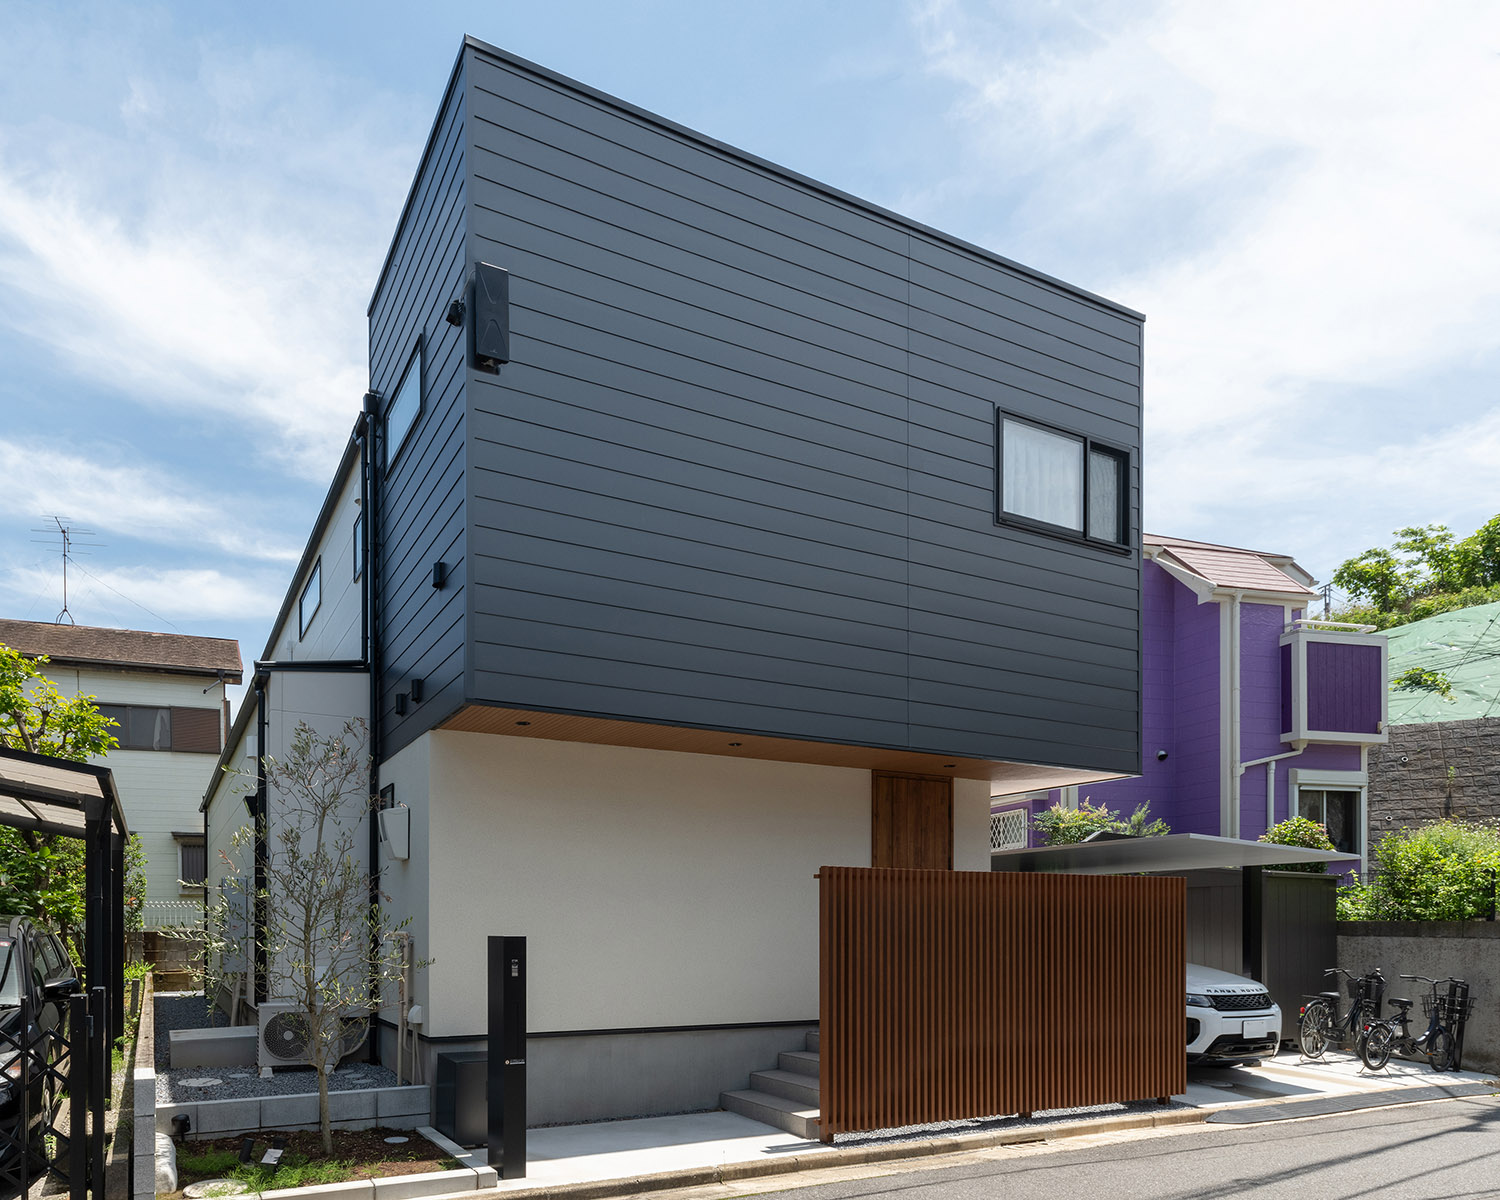 黒い金属の外壁と白い外壁を組み合わせた外観の住宅・デザイン住宅